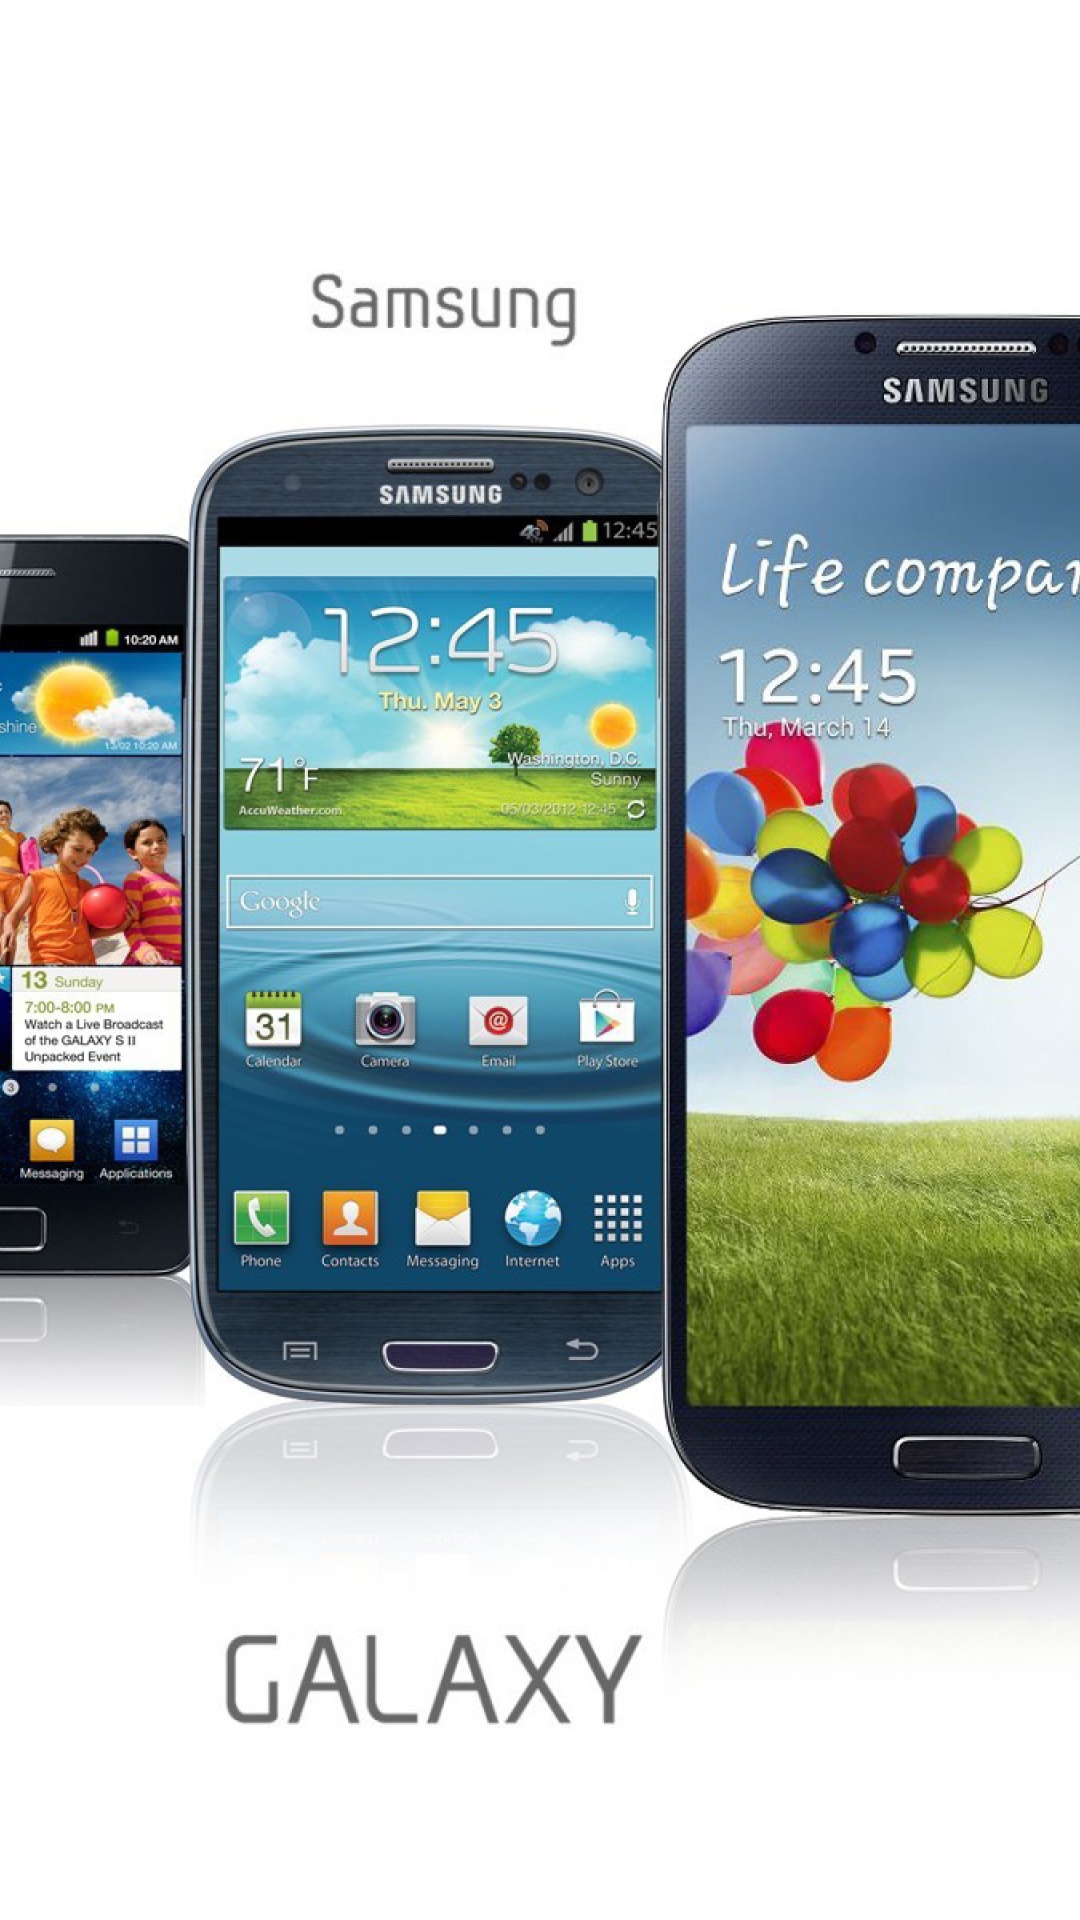 Sfondi Samsung Smartphones S1, S2, S3, S4 1080x1920